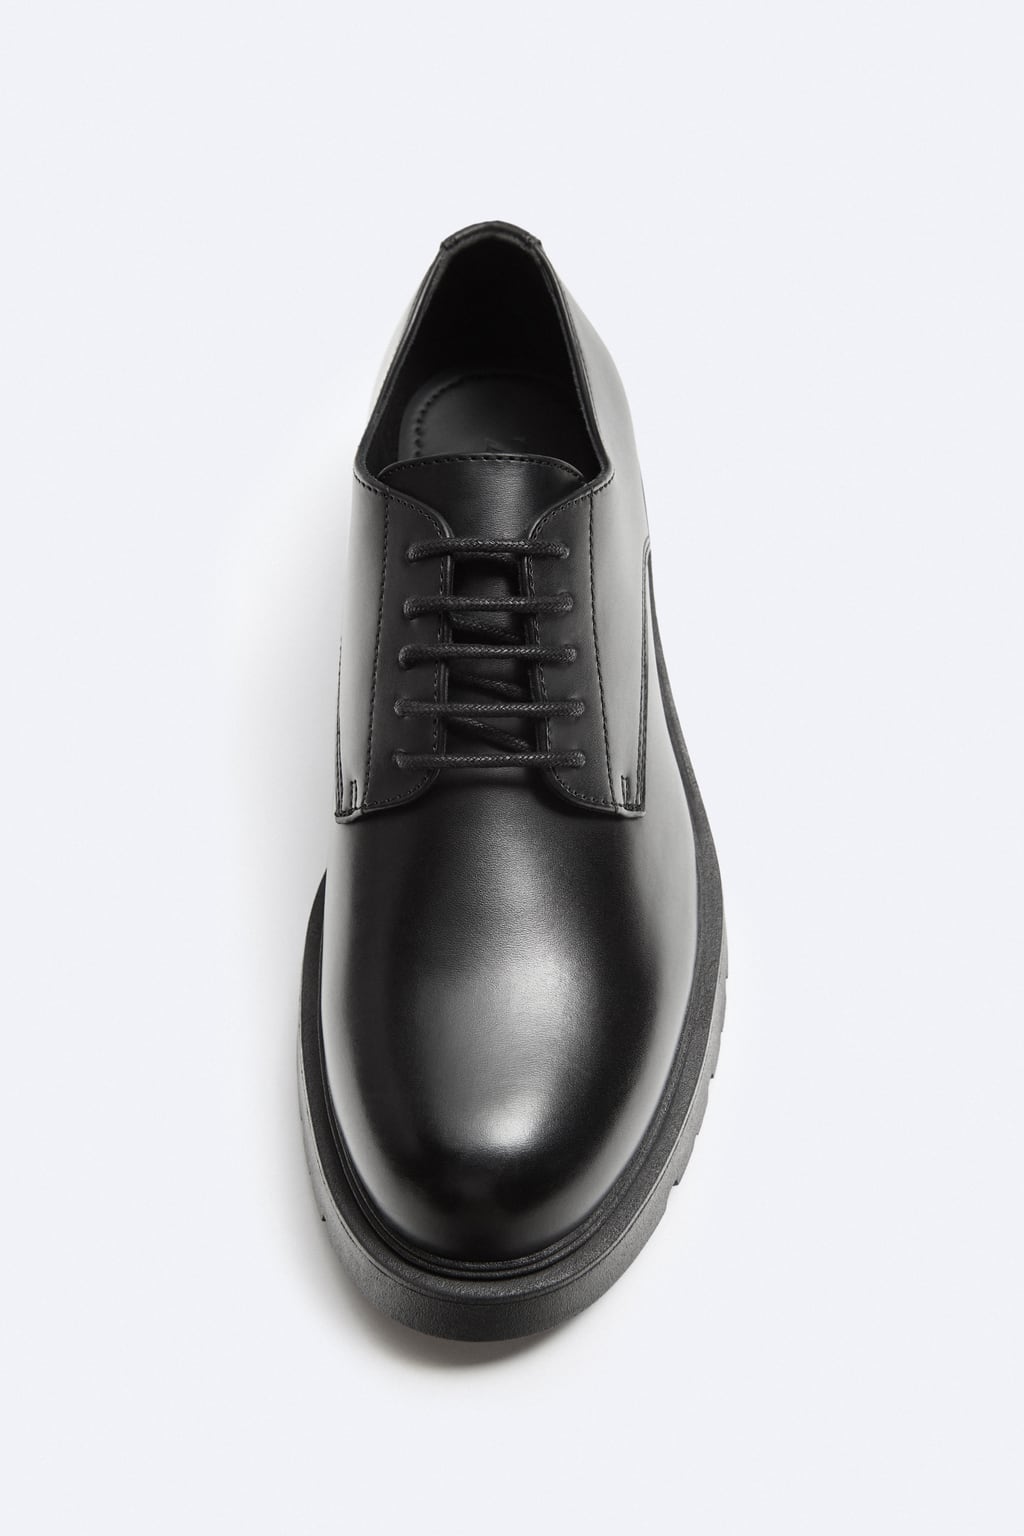 Zara basic chunky shoe in black